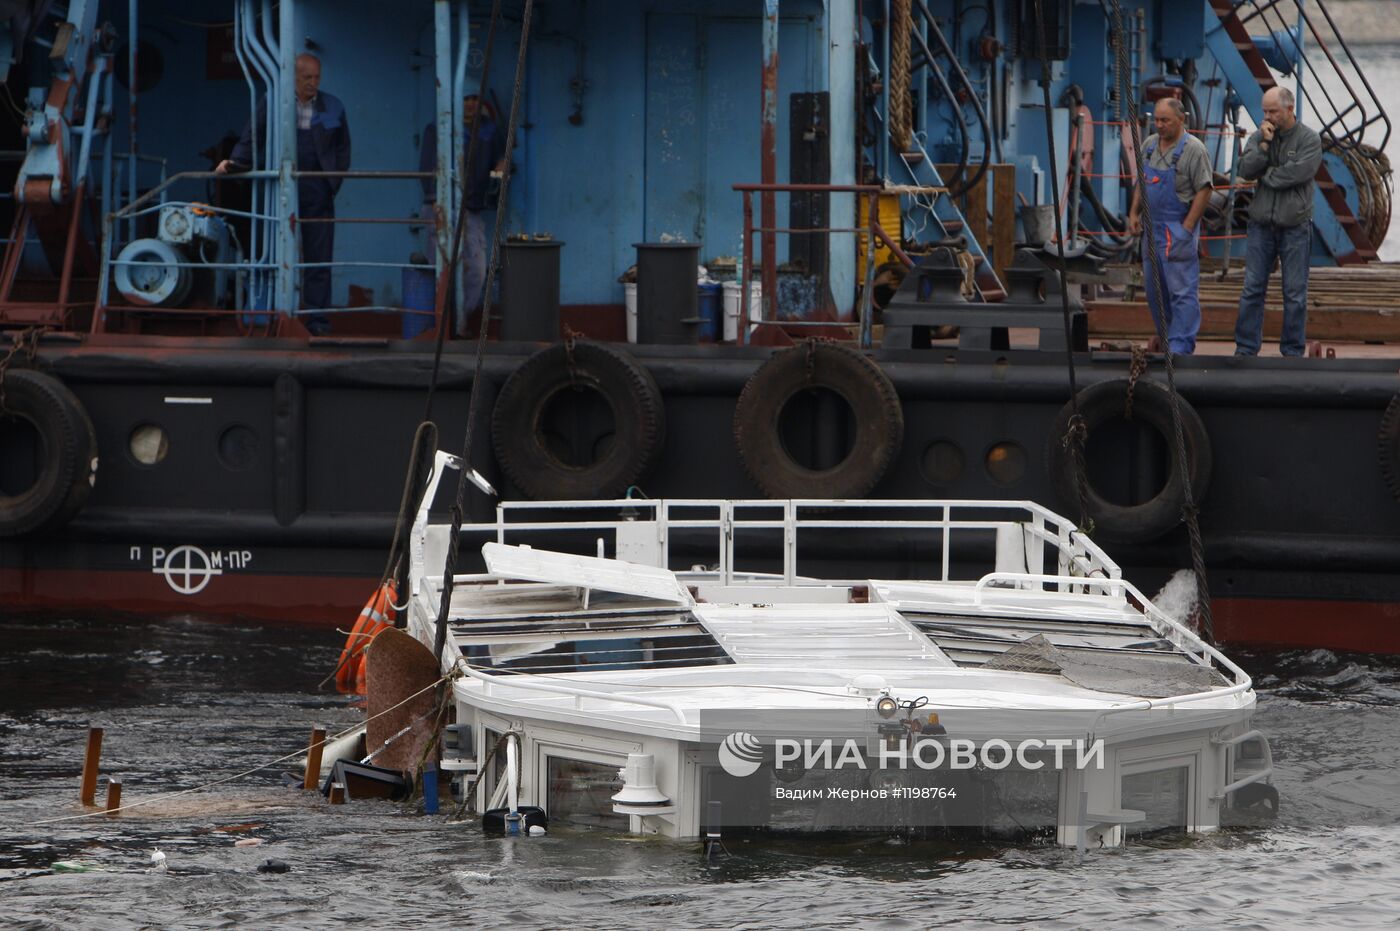 Подъем затонувшего катера типа "росси" на Неве